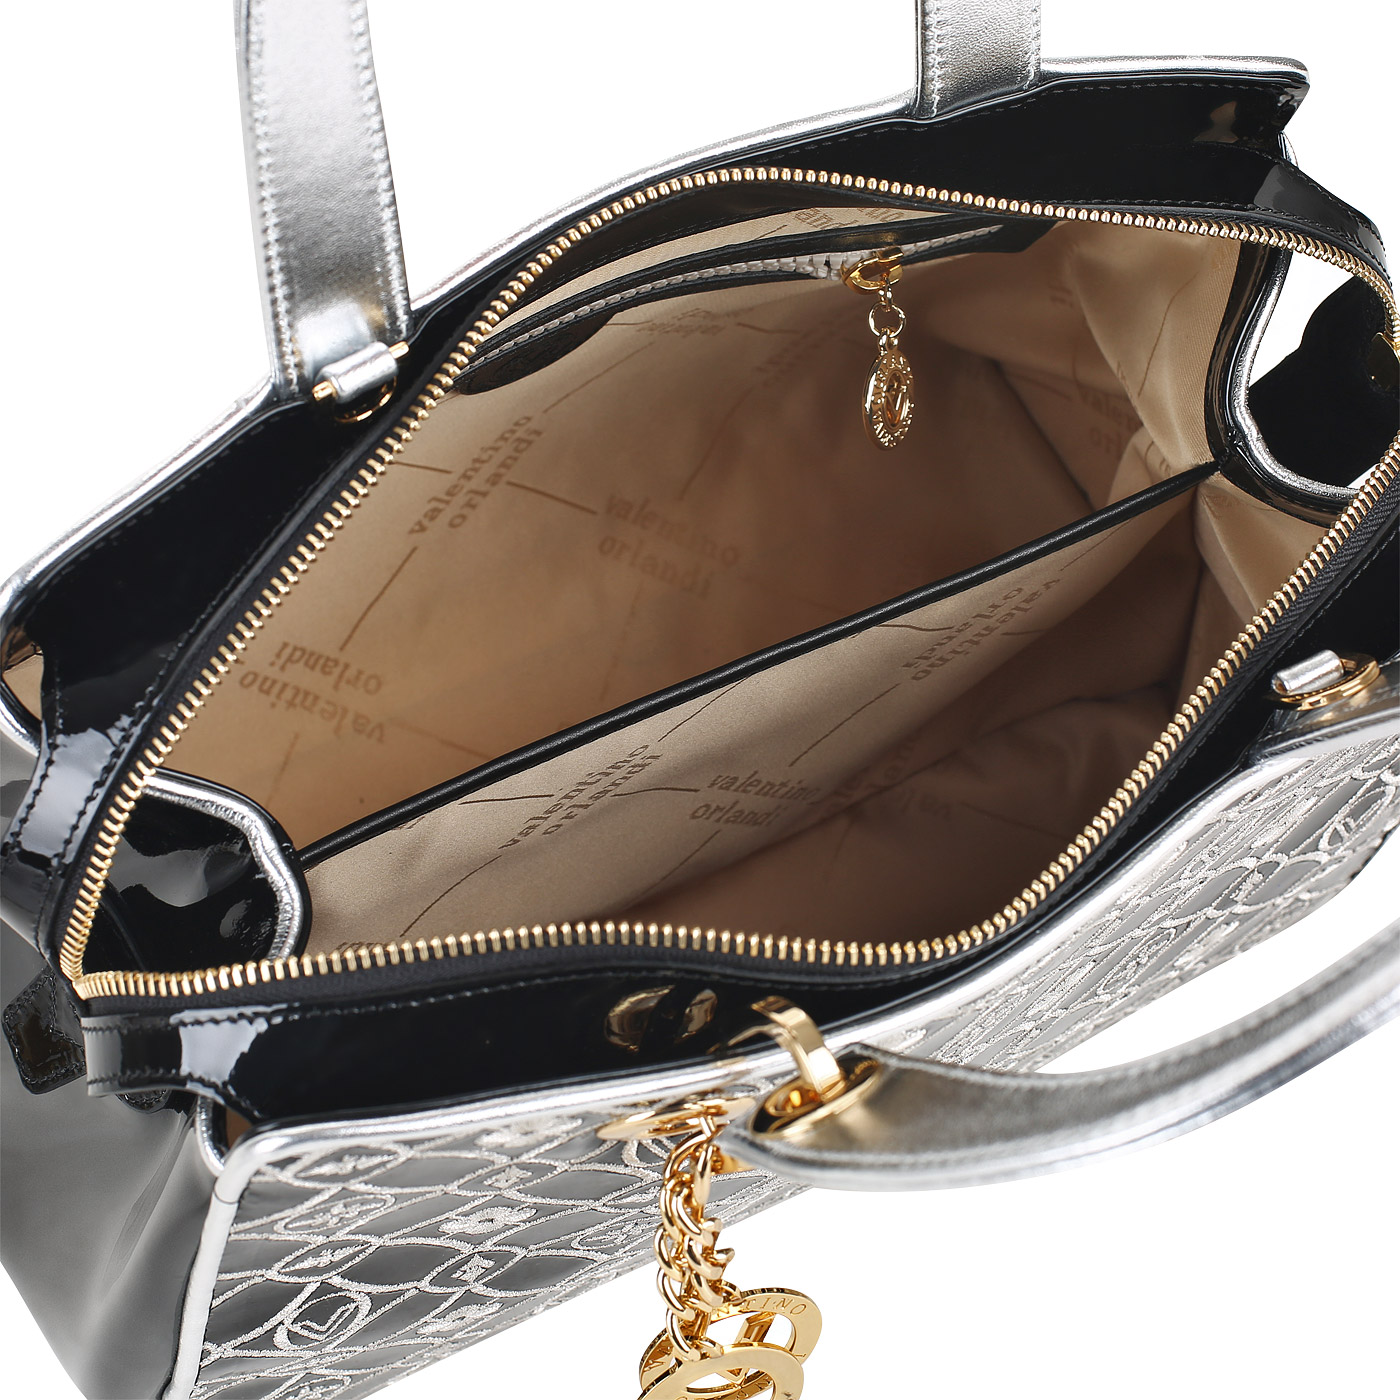 Лакированная сумка с серебряной вышивкой Valentino Orlandi Aly